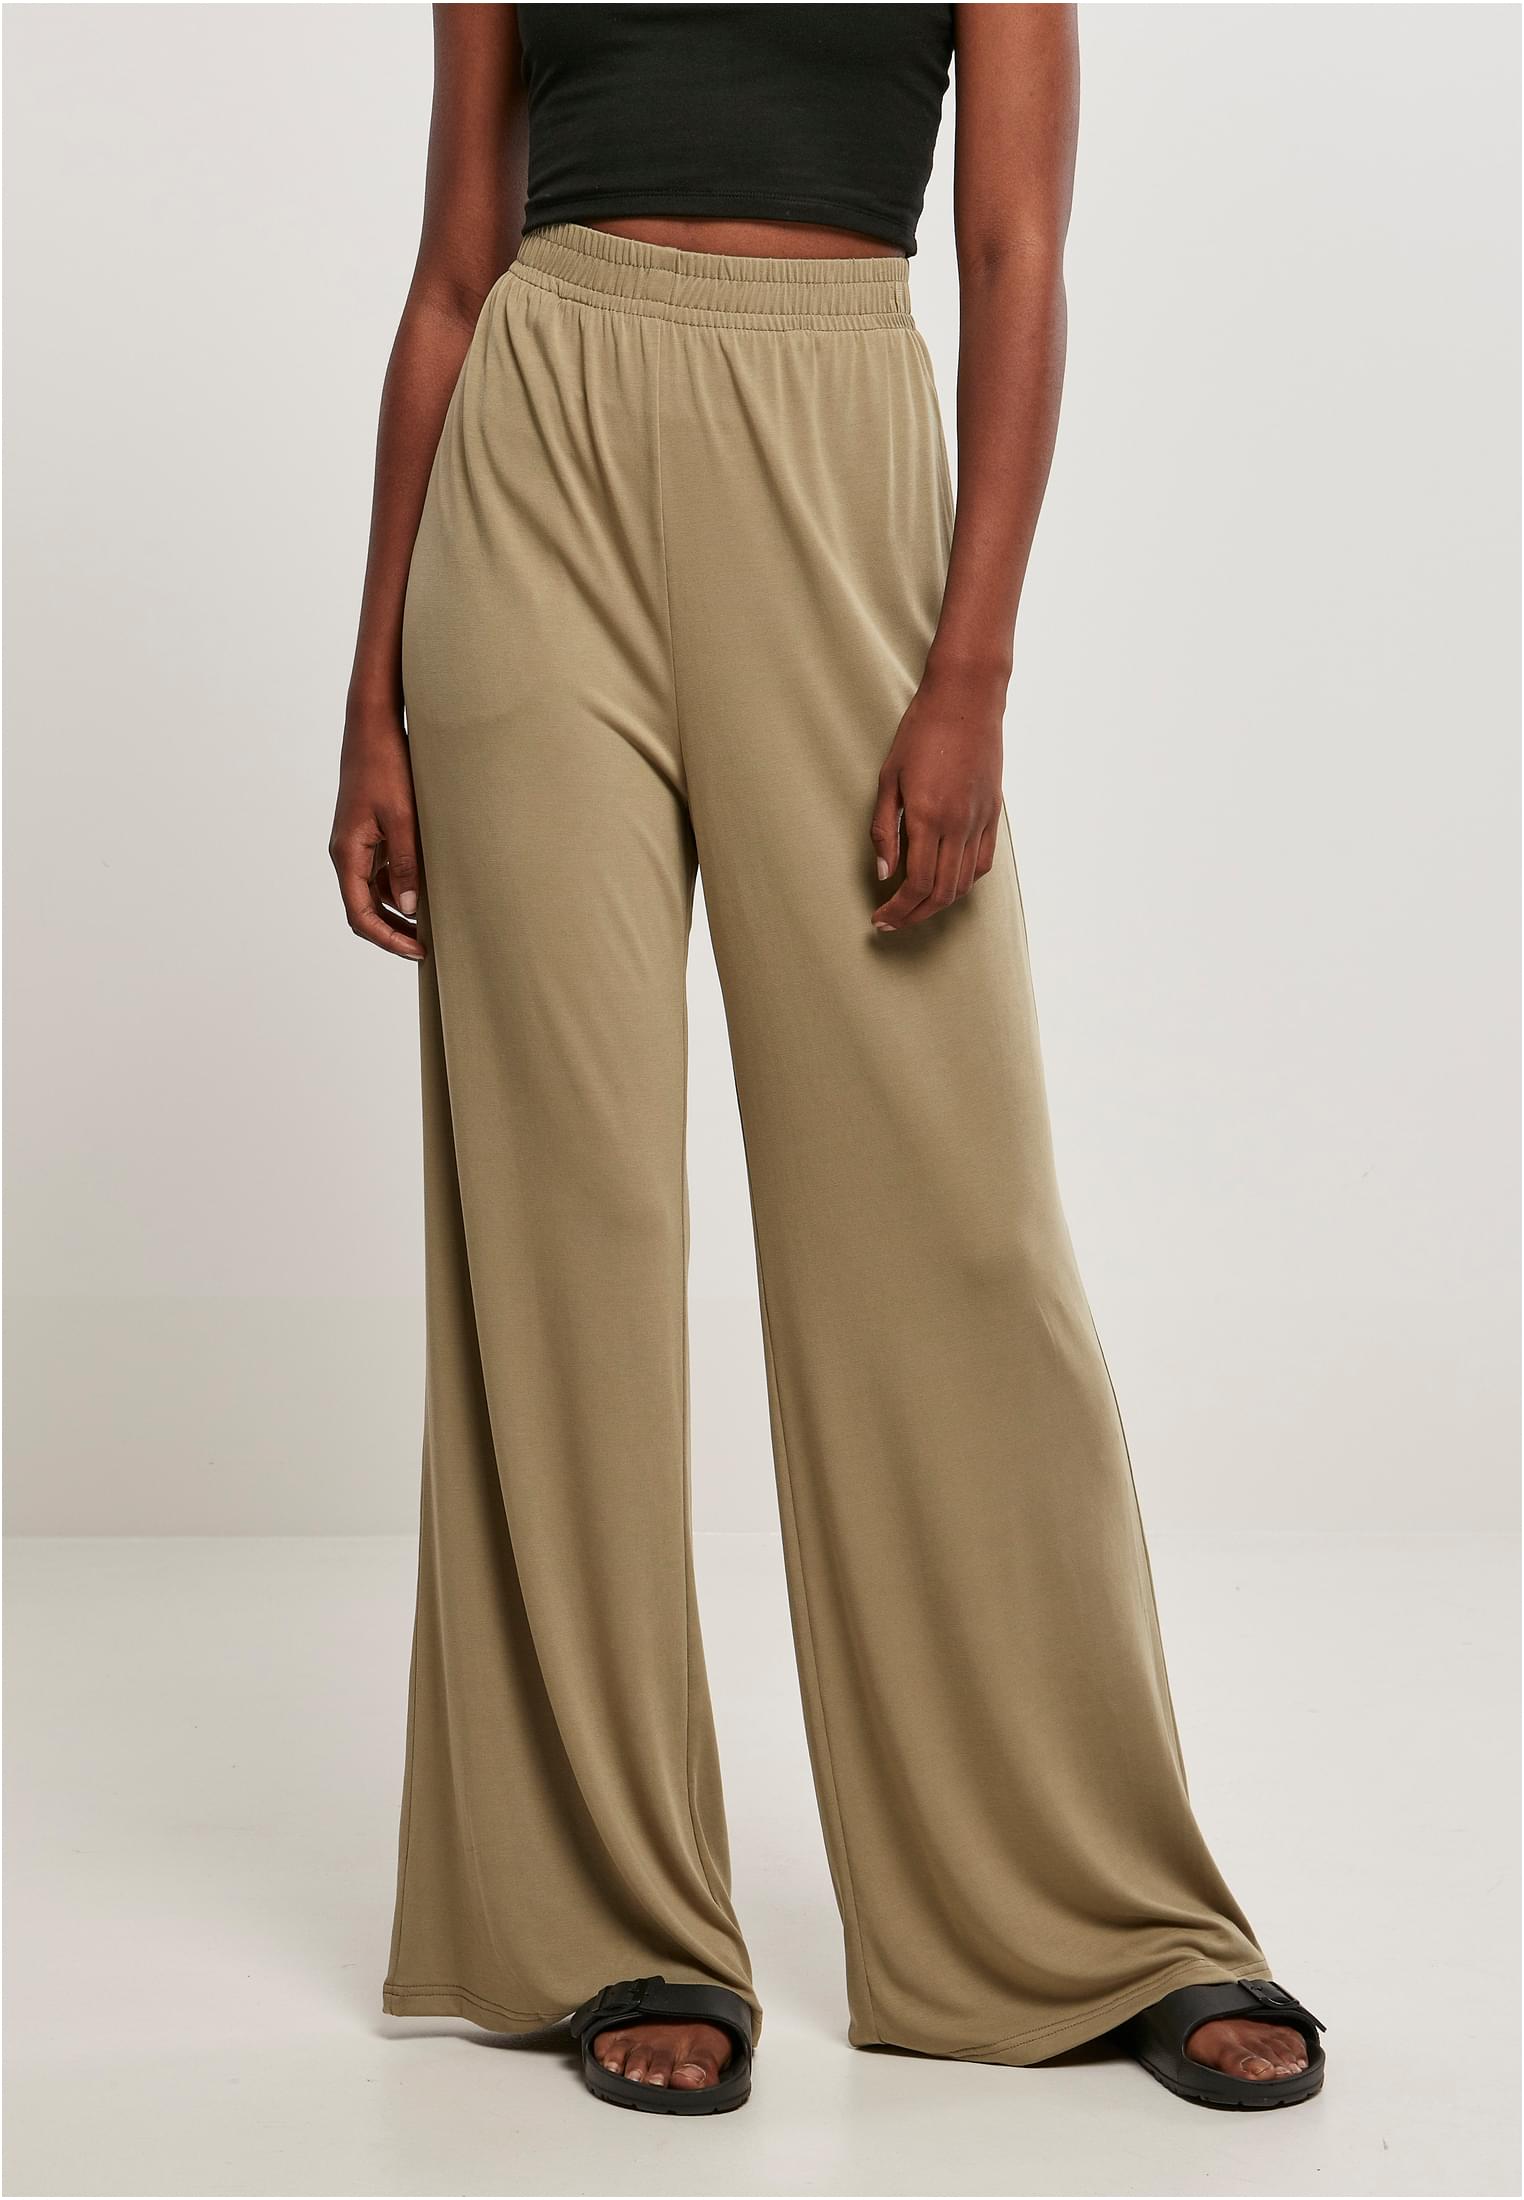 Women's Modal Wide Khaki Pants